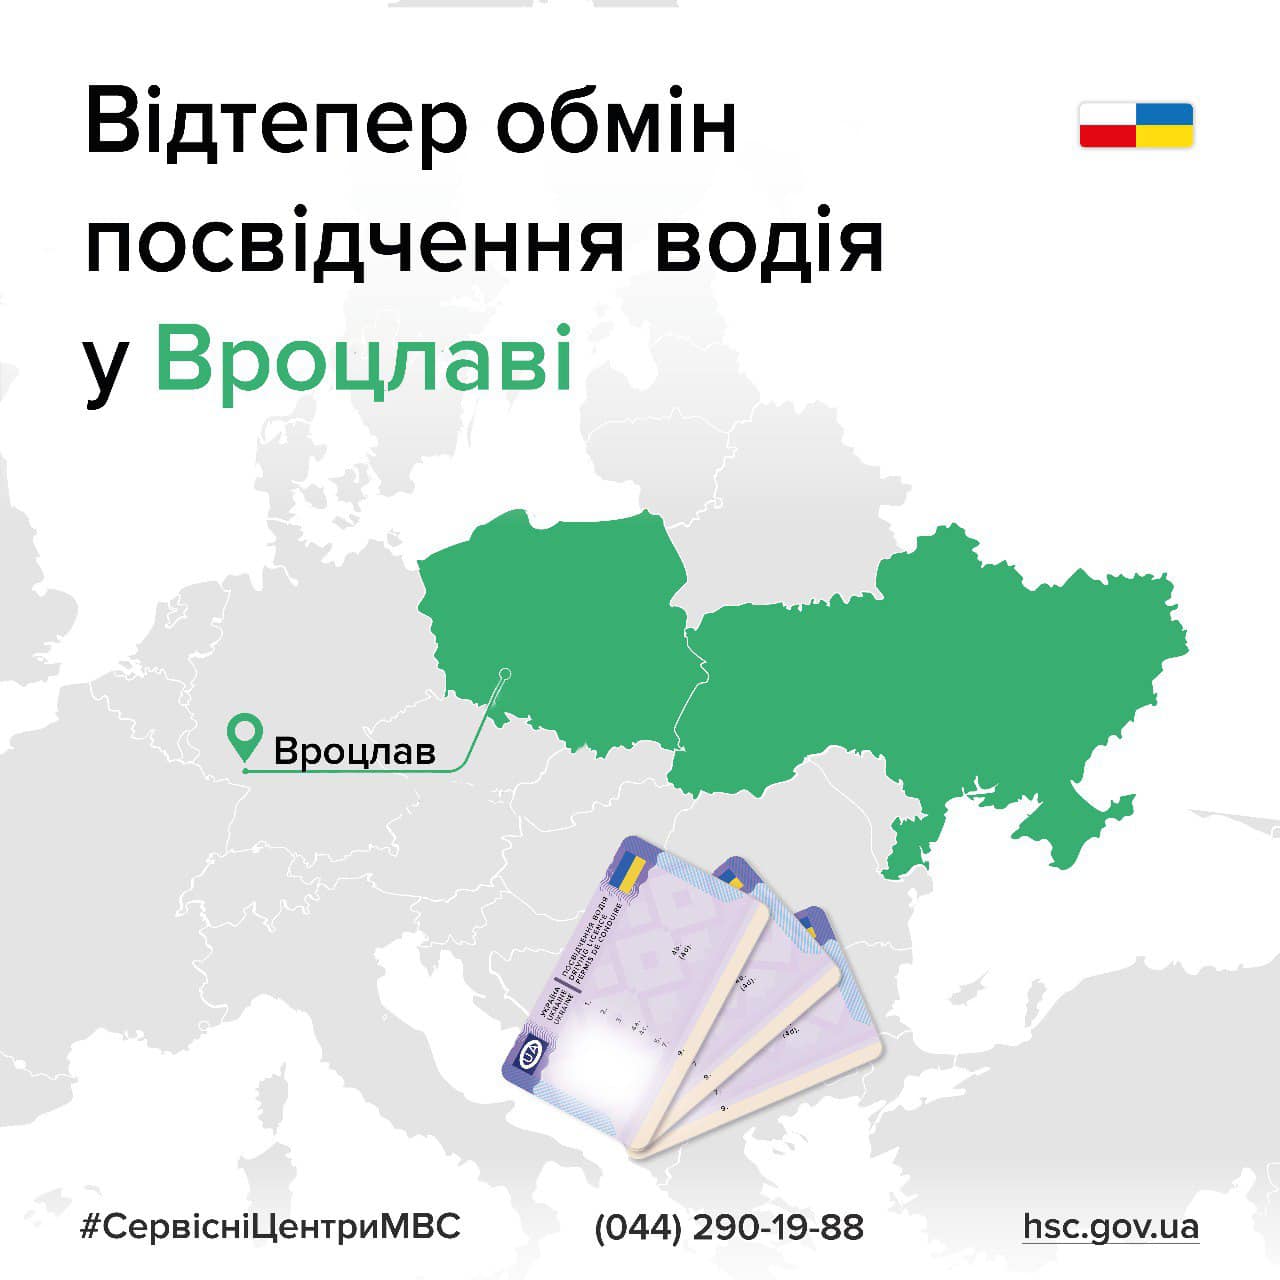 Украинцы теперь могут обменять водительское удостоверение во Вроцлаве 